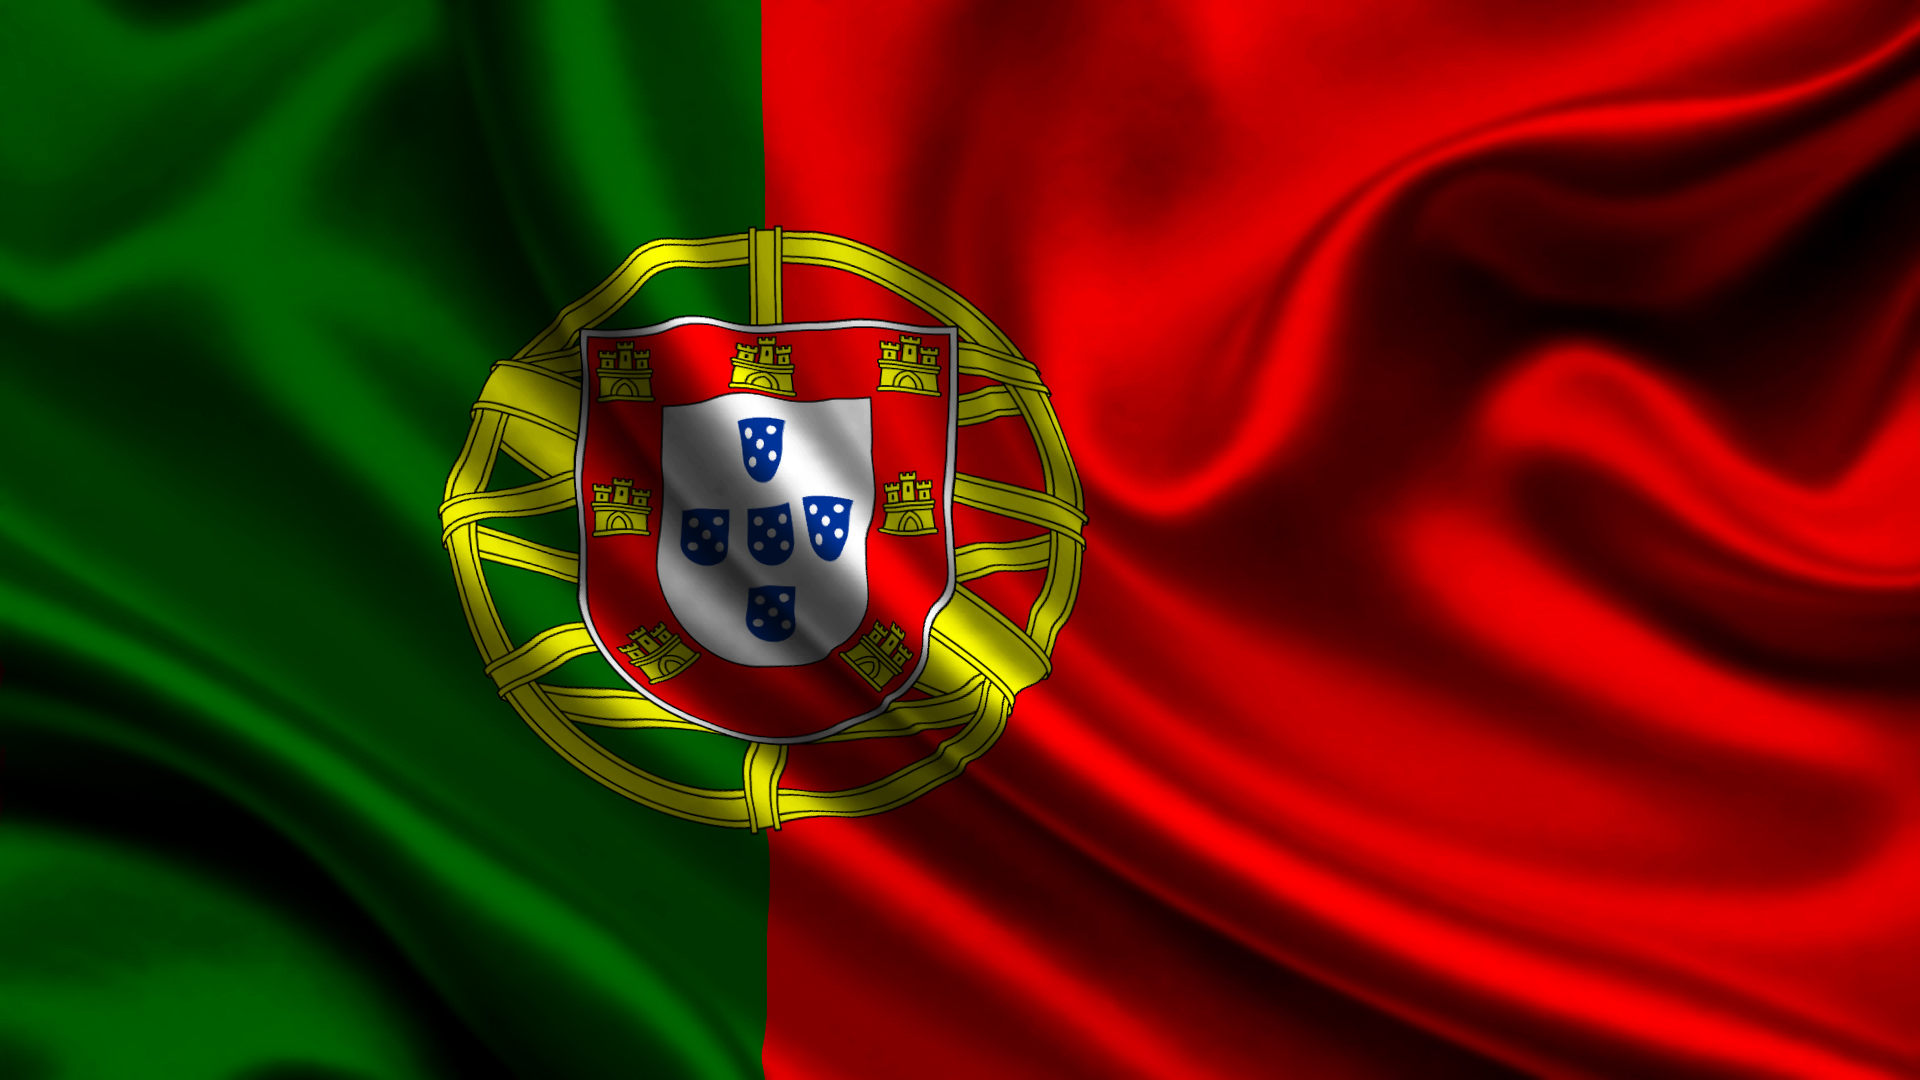 Los mejores fondos de pantalla de Bandera Portuguesa para la pantalla del teléfono